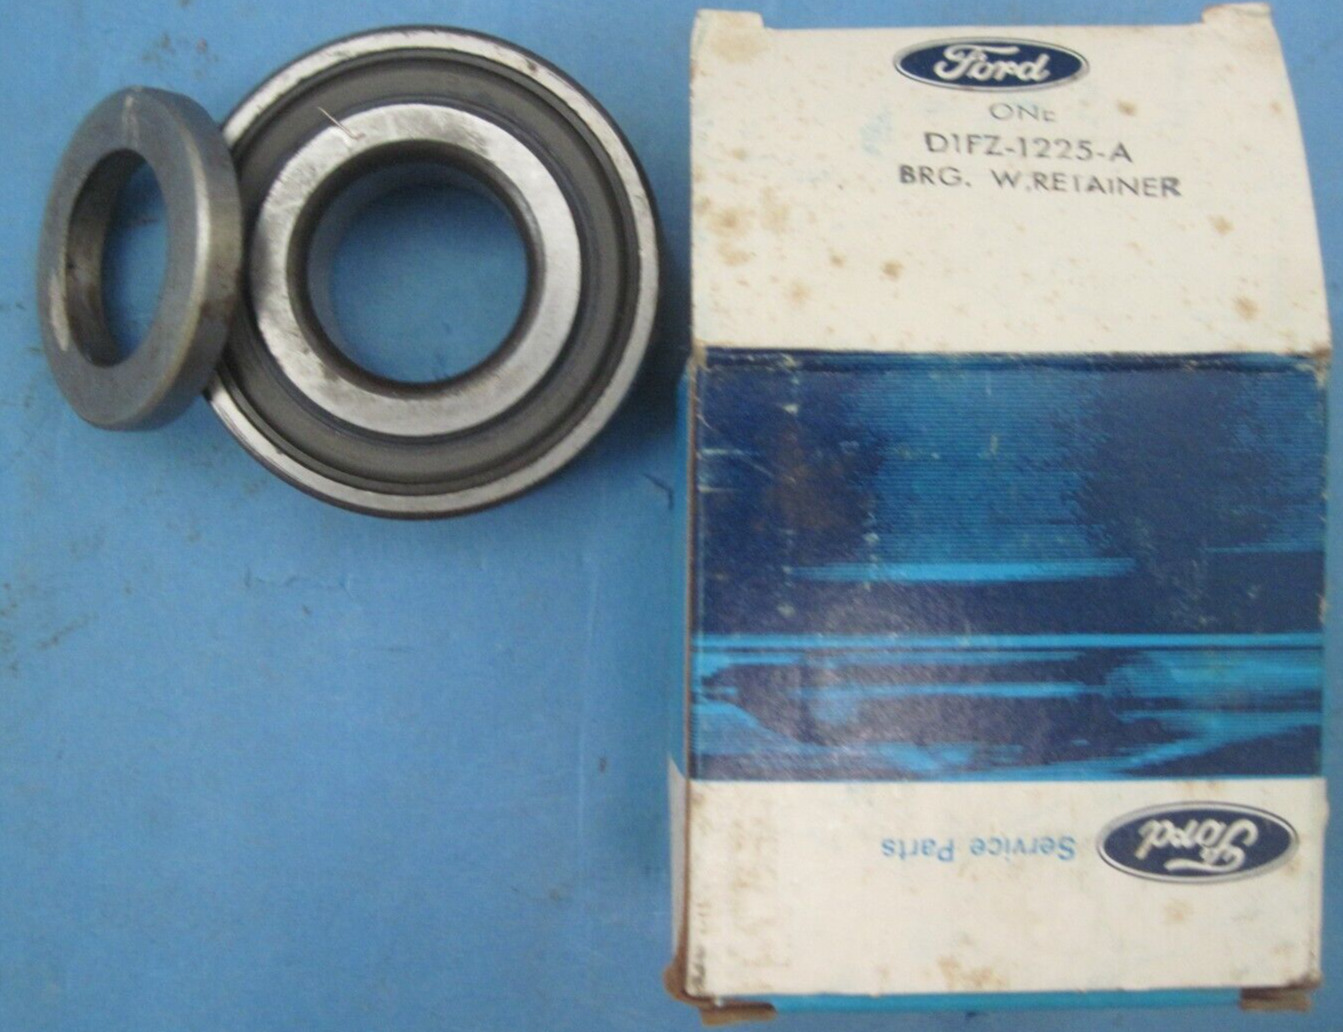 NOS rear wheel bearing D1FZ-1225-A 1971-1972 Pinto